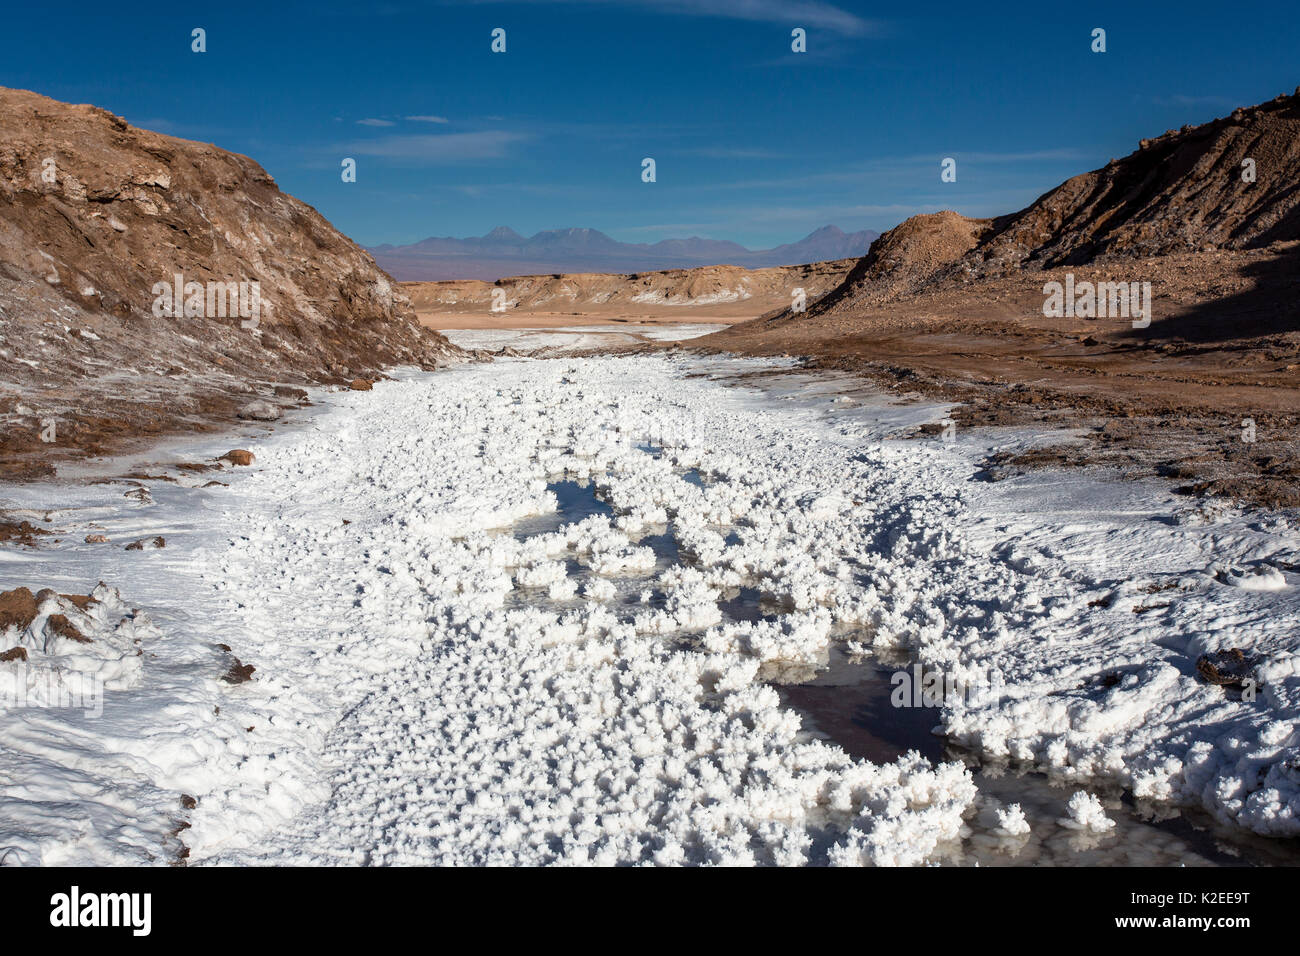 Un Salt River - las temperaturas están por encima de 38 °C, el Valle de la Cordillera de la sal, San Pedro de Atacama, el desierto de Atacama, Chile (altura 2443 m sobre el nivel del mar) Foto de stock